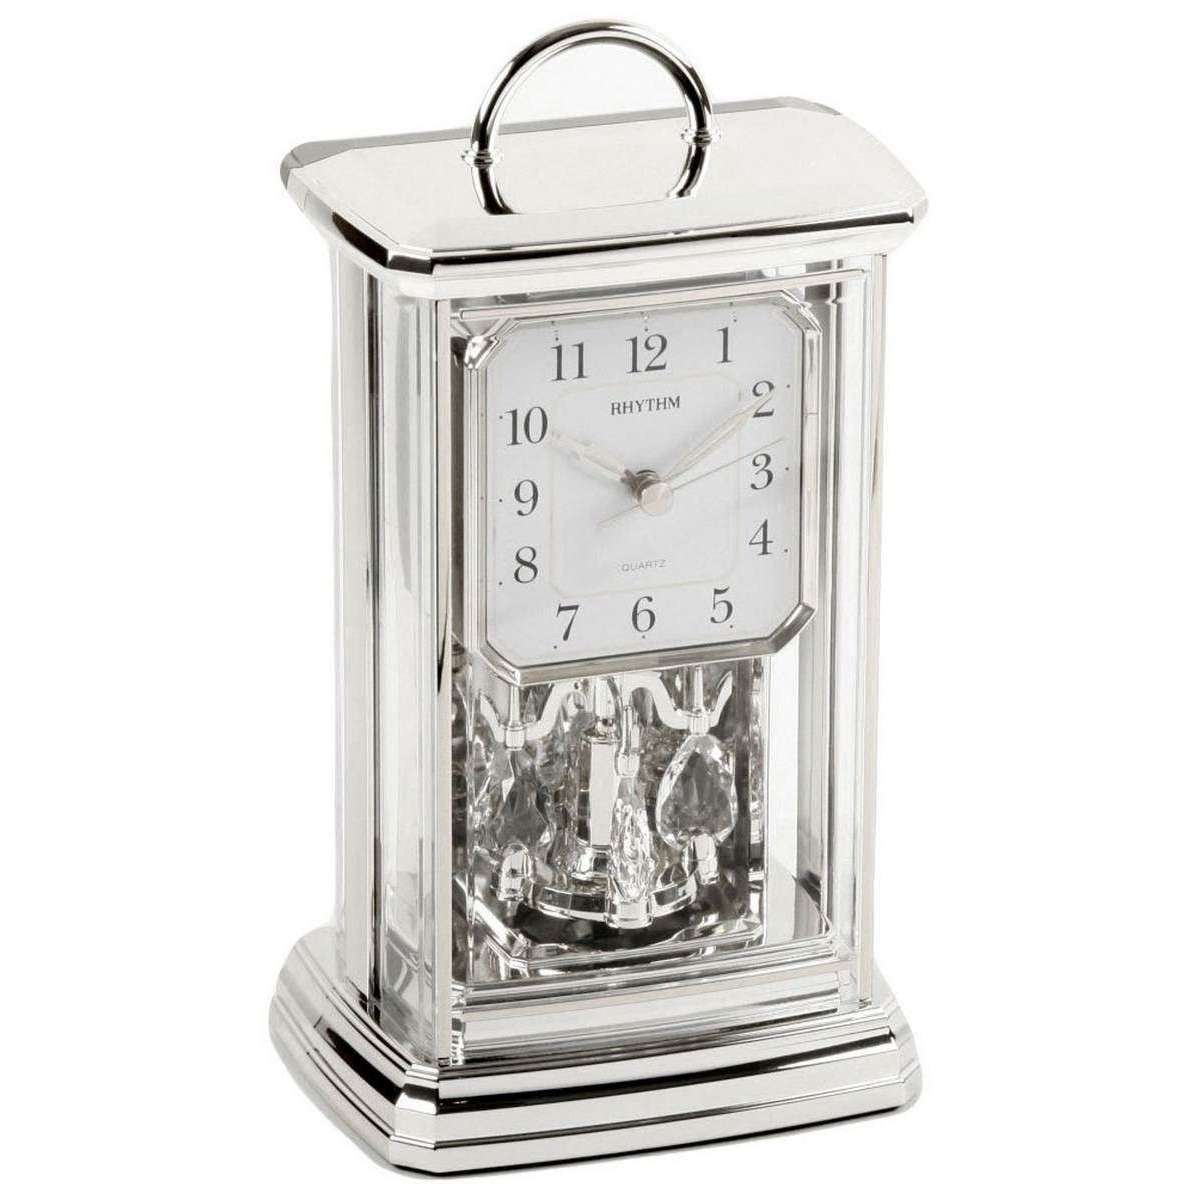 Rhythm Arab Dial Oblong Mantel Clock - Silver